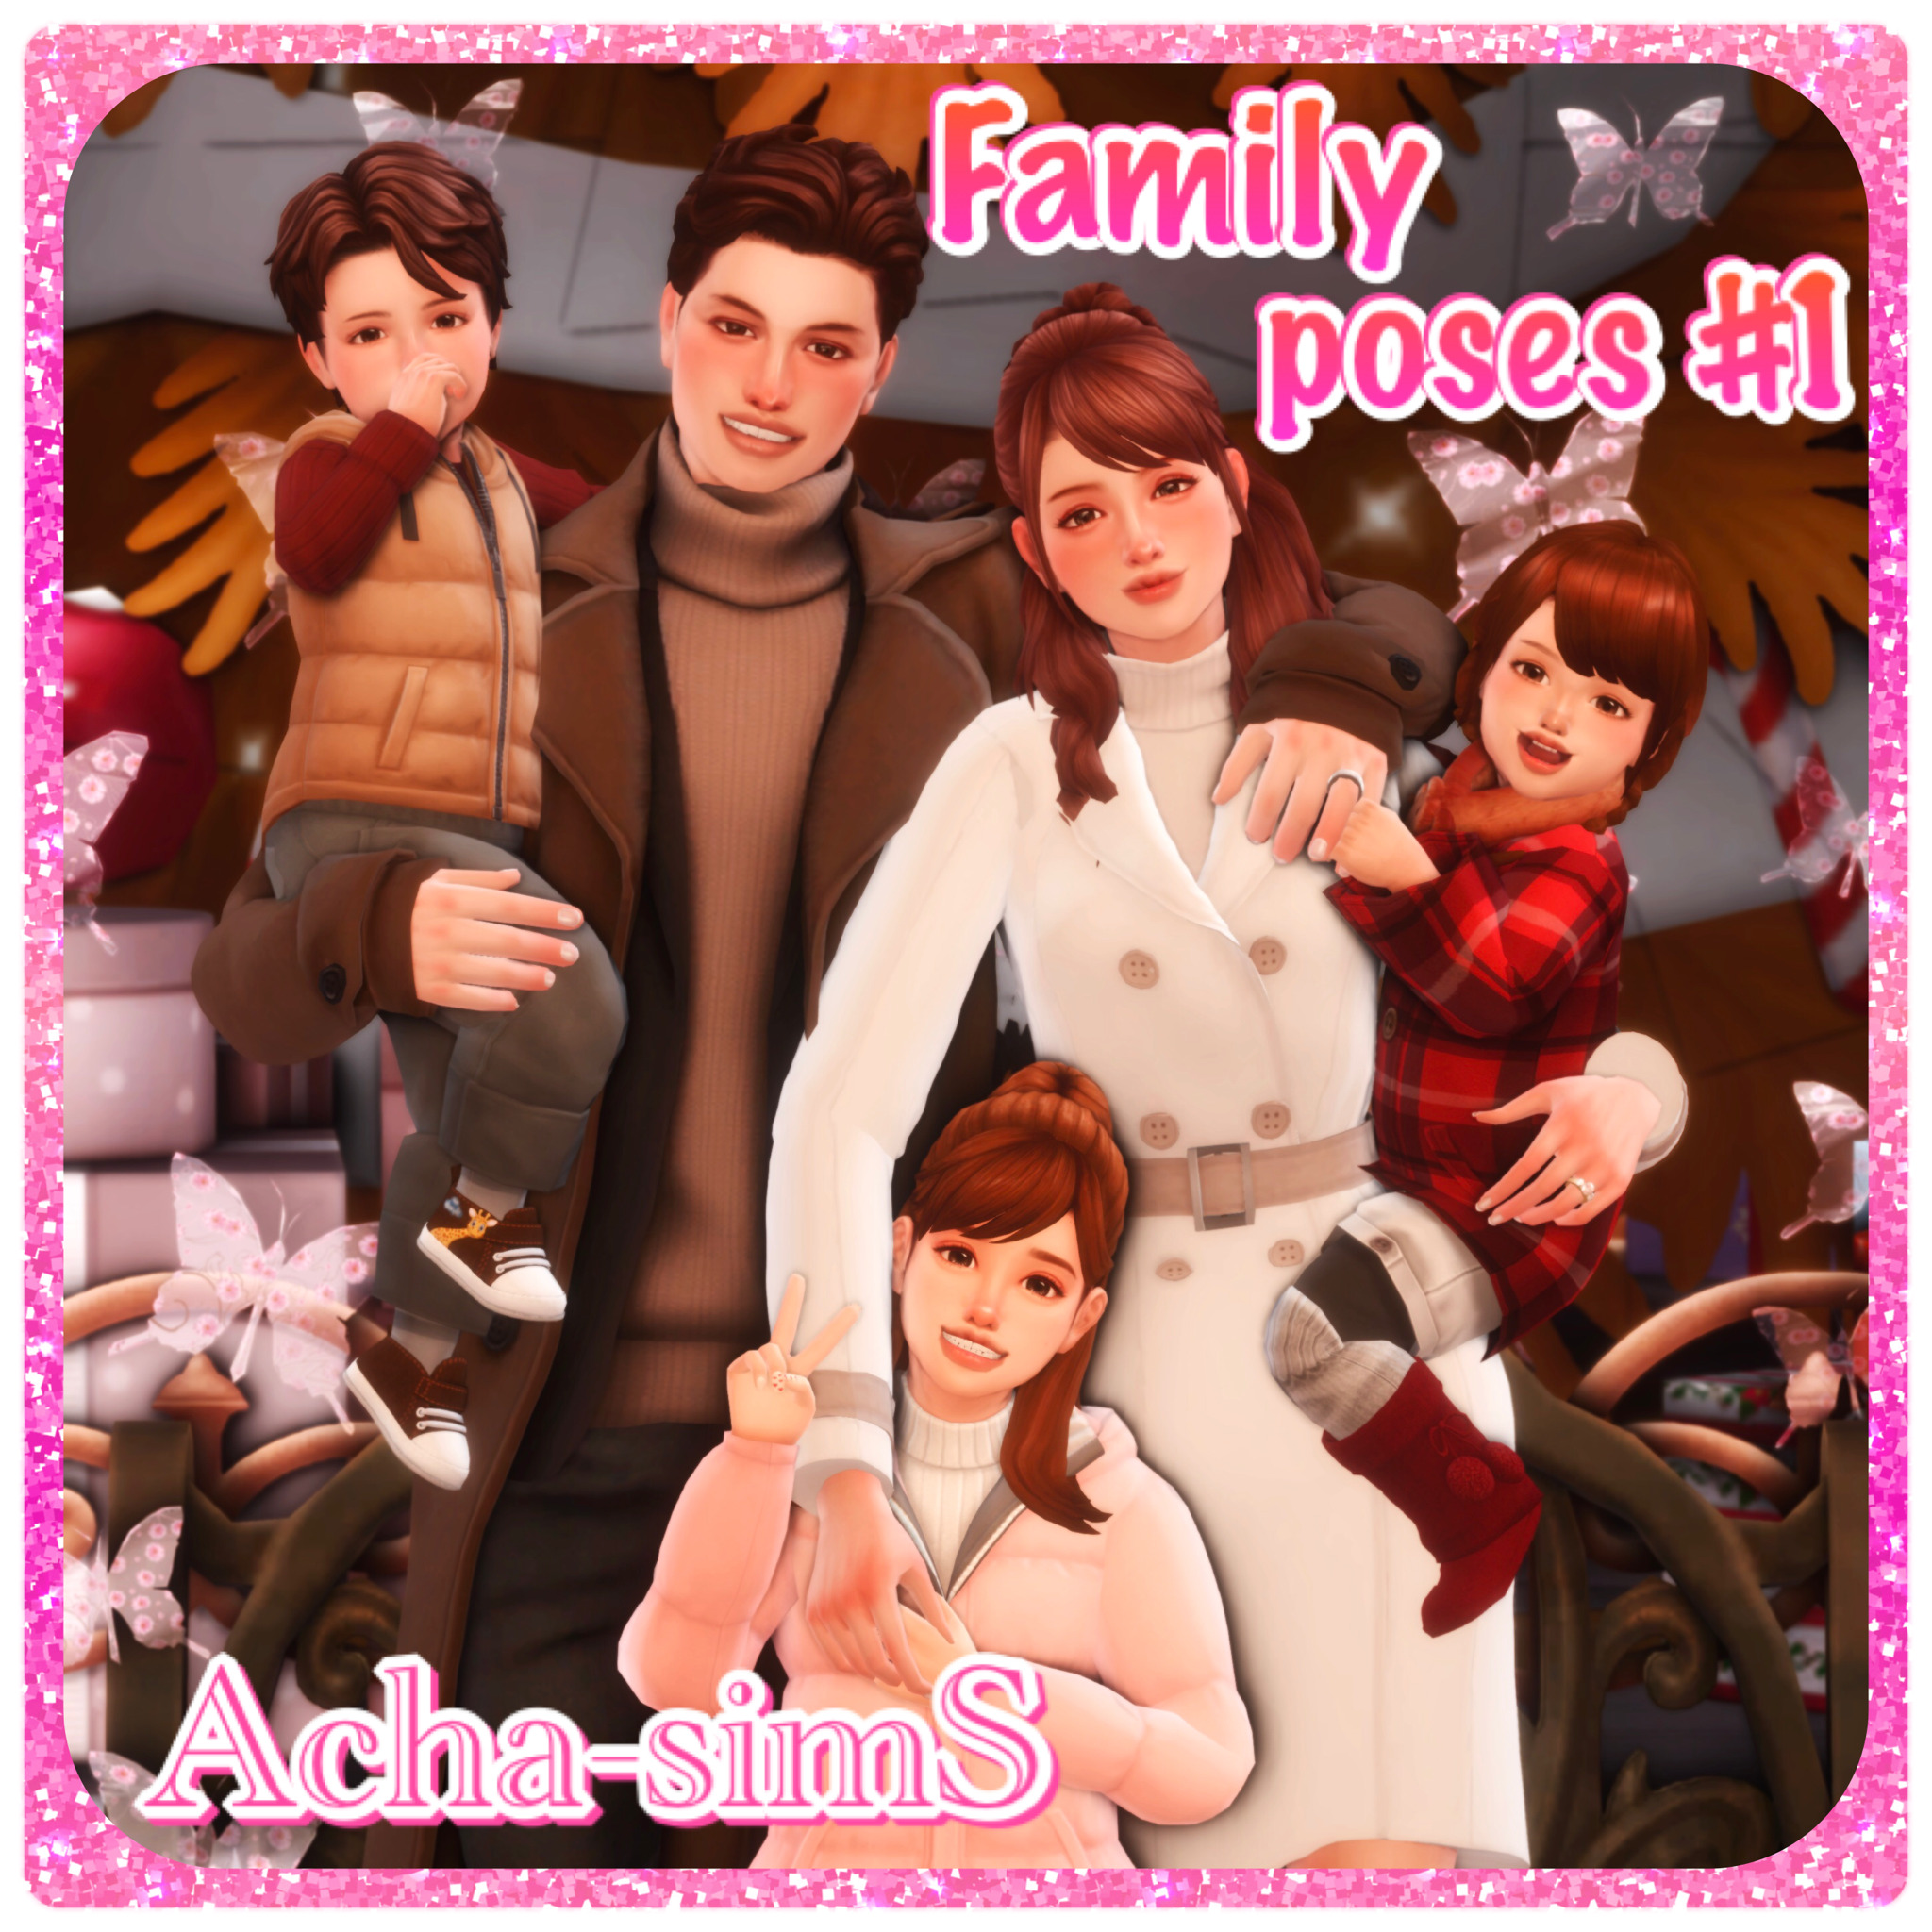 Acha Family poses #1 (20/12/20) project avatar